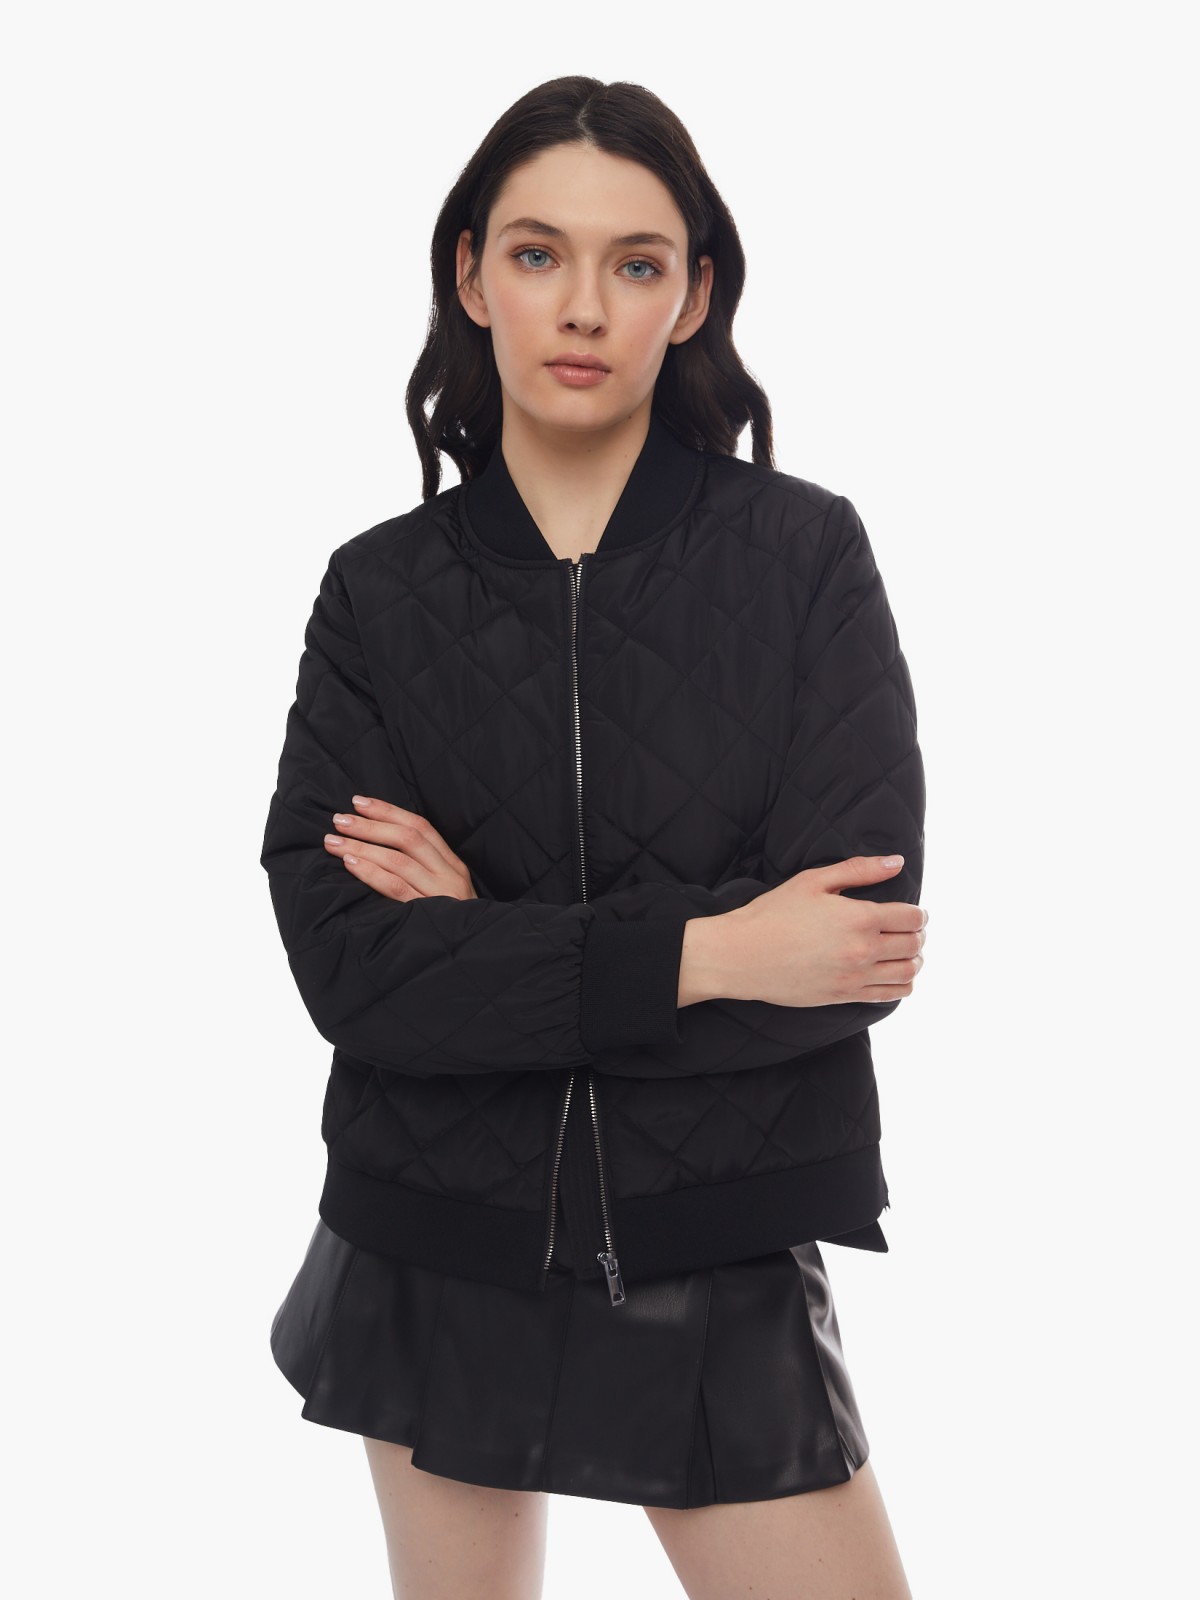 Тёплая куртка-бомбер на синтепоне со стёжкой zolla 024125102224, цвет черный, размер XS